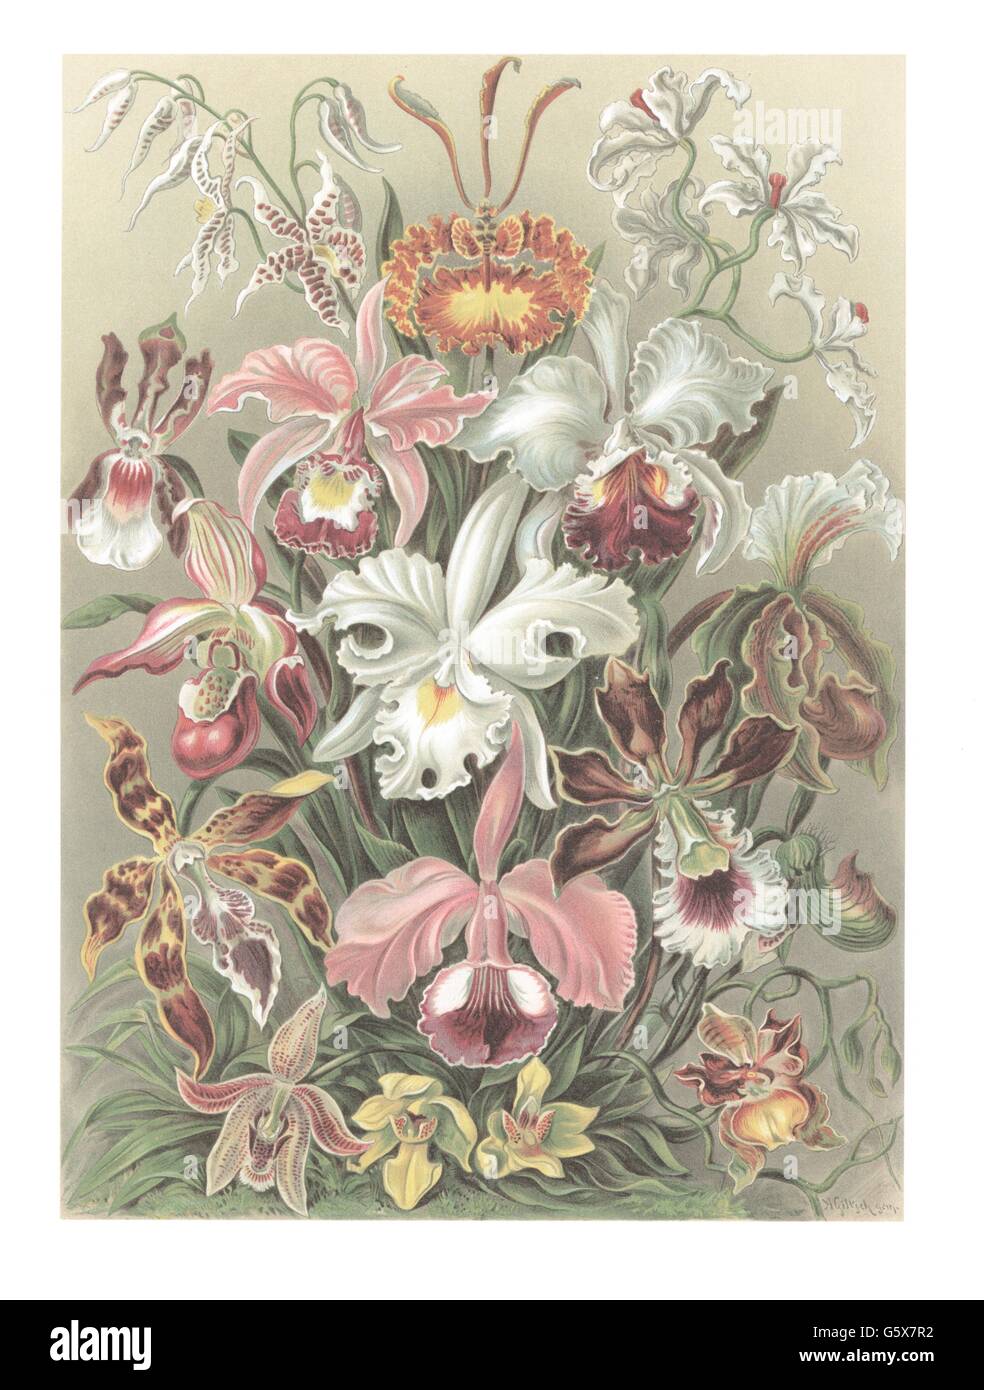 botanique, asperges, orchidées (Orchidaceae), lithographie de couleur, de: Ernst Haeckel, 'Kunstformen der Natur', Leipzig - Vienne, 1899 - 1904, droits additionnels-Clearences-non disponible Banque D'Images